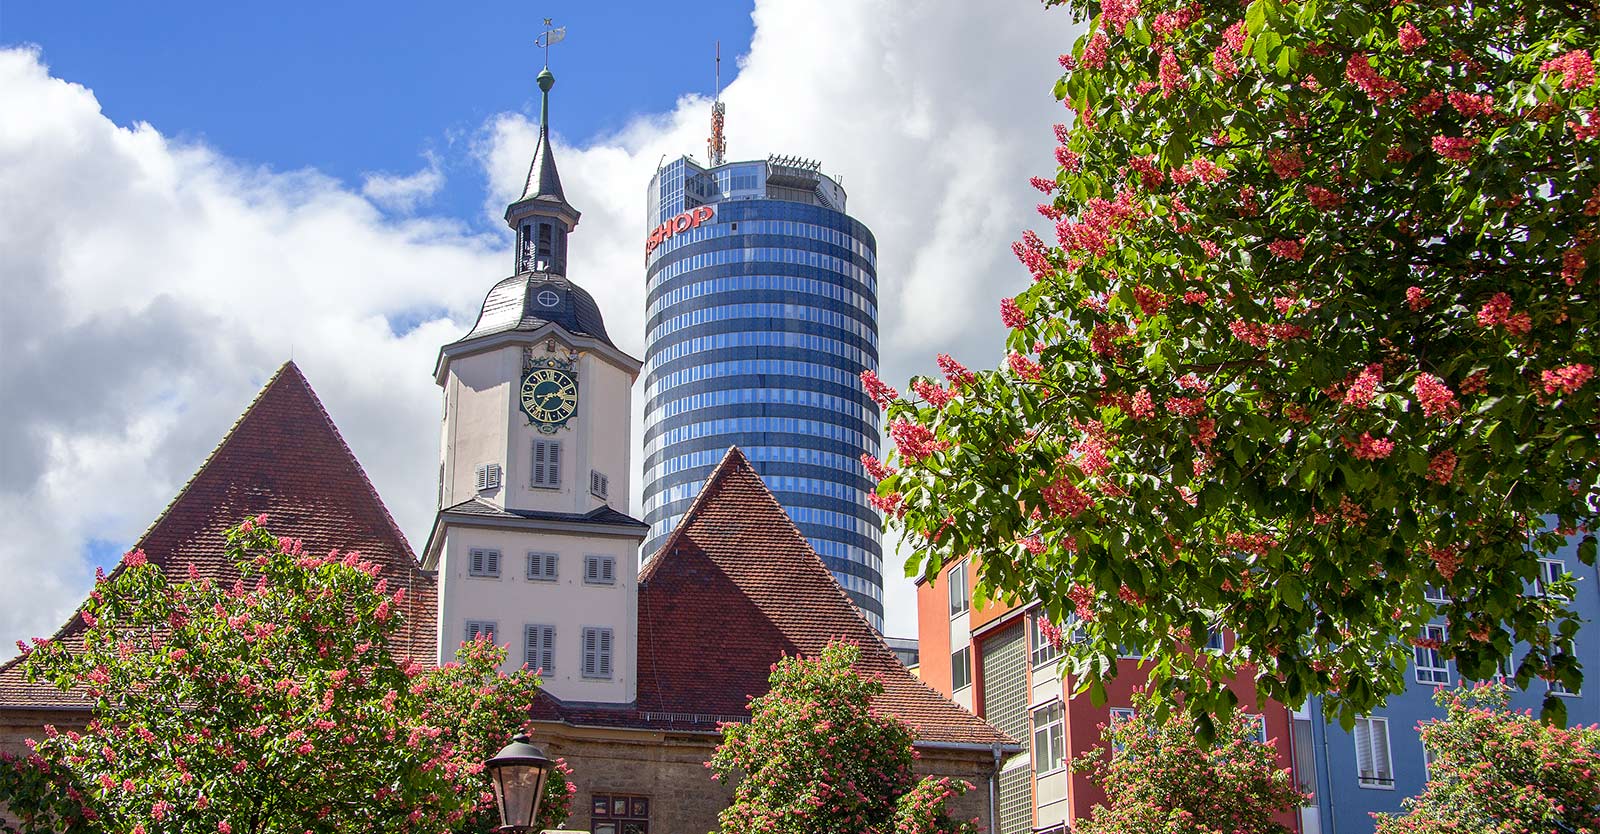 Jena Historische Innenstadt